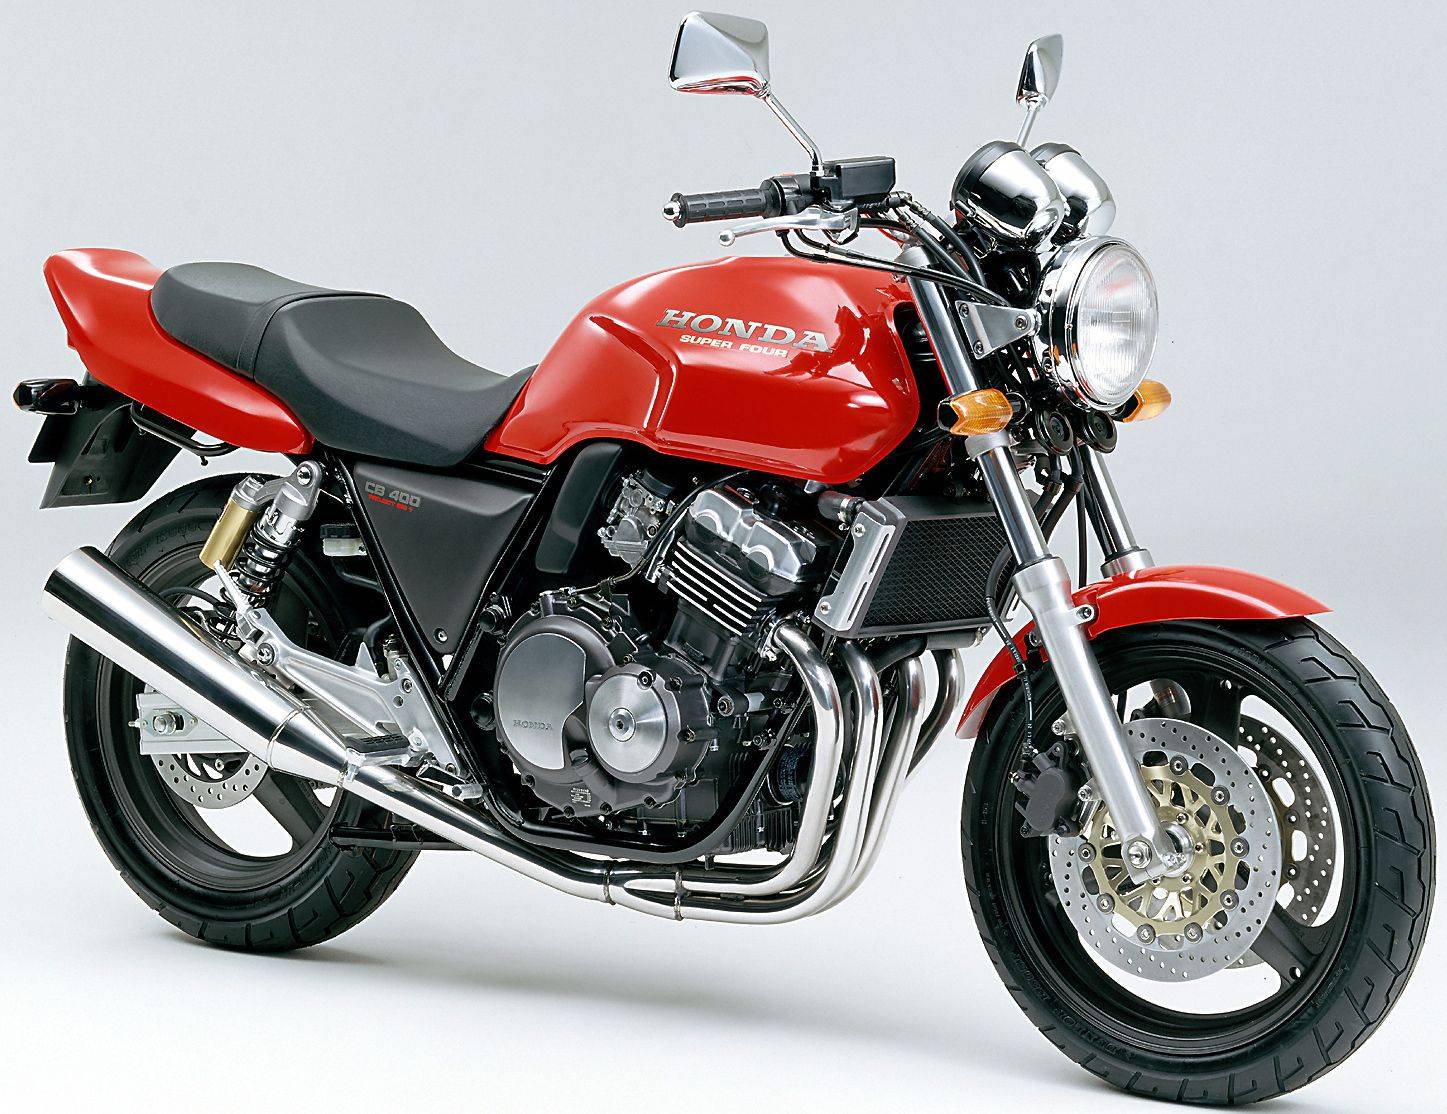 Мотоцикл honda cb 400 ss - идеальный представитель ретро-классики